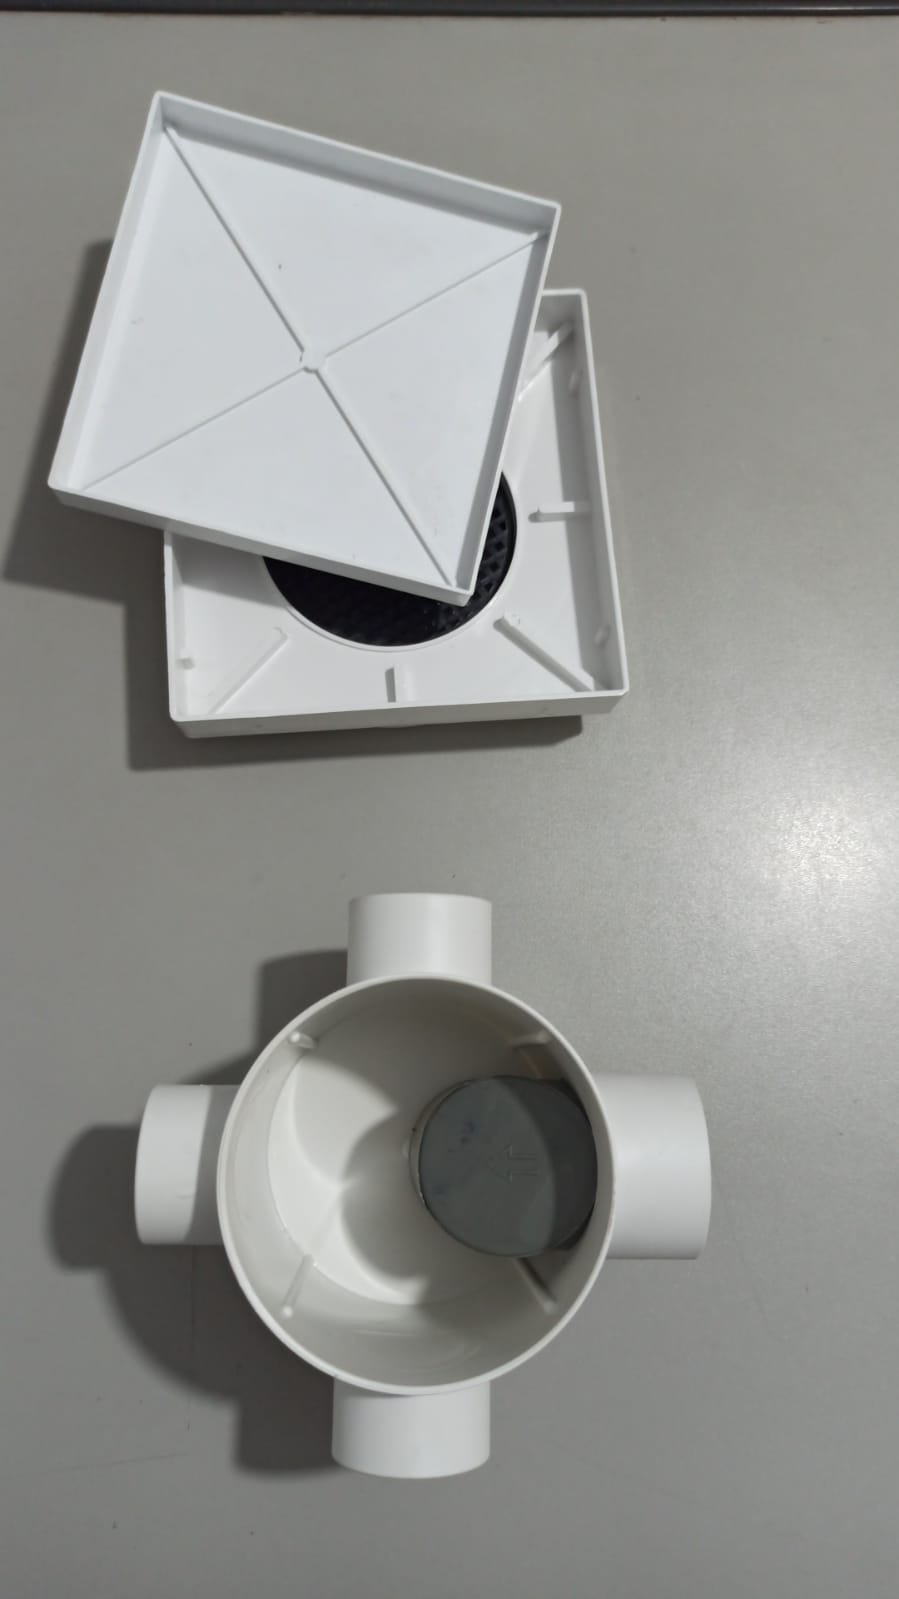 Ralo Invisível Sifonado 15x15 Branco Banheiro modelo Porcelanato Colar Piso com Caixa Sifonada 100 - - 4